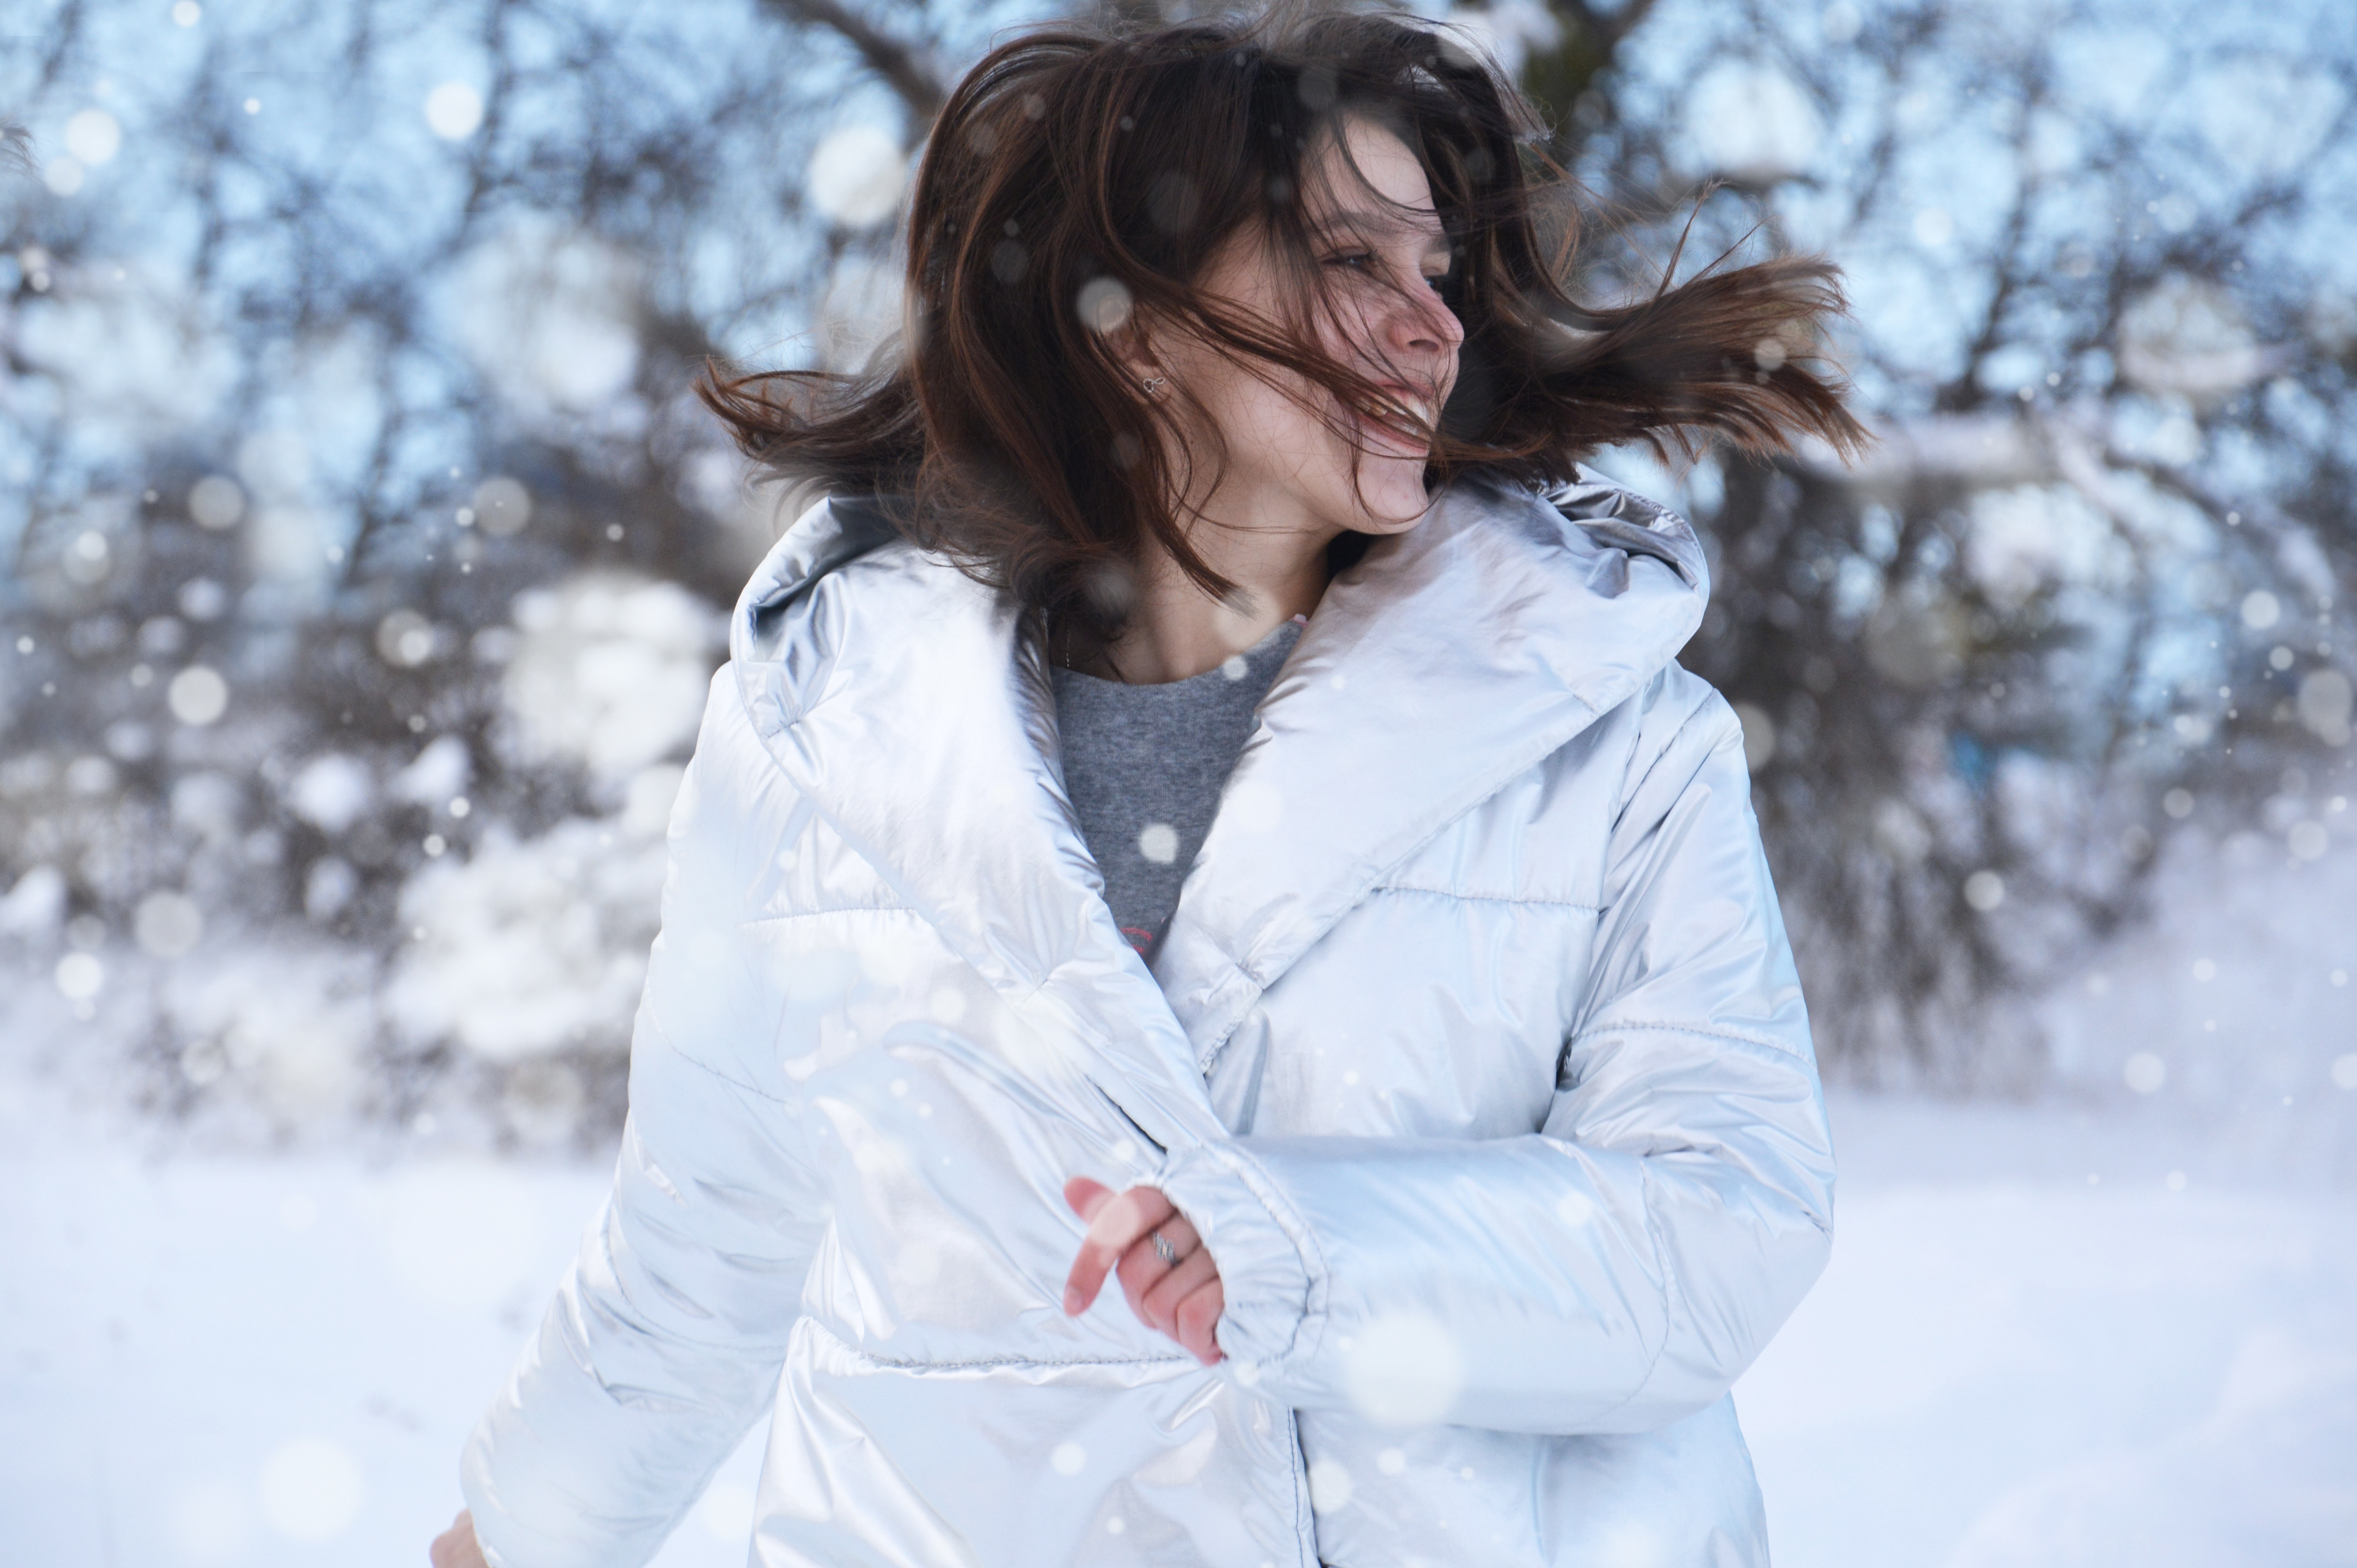 Women's white winter coat photo